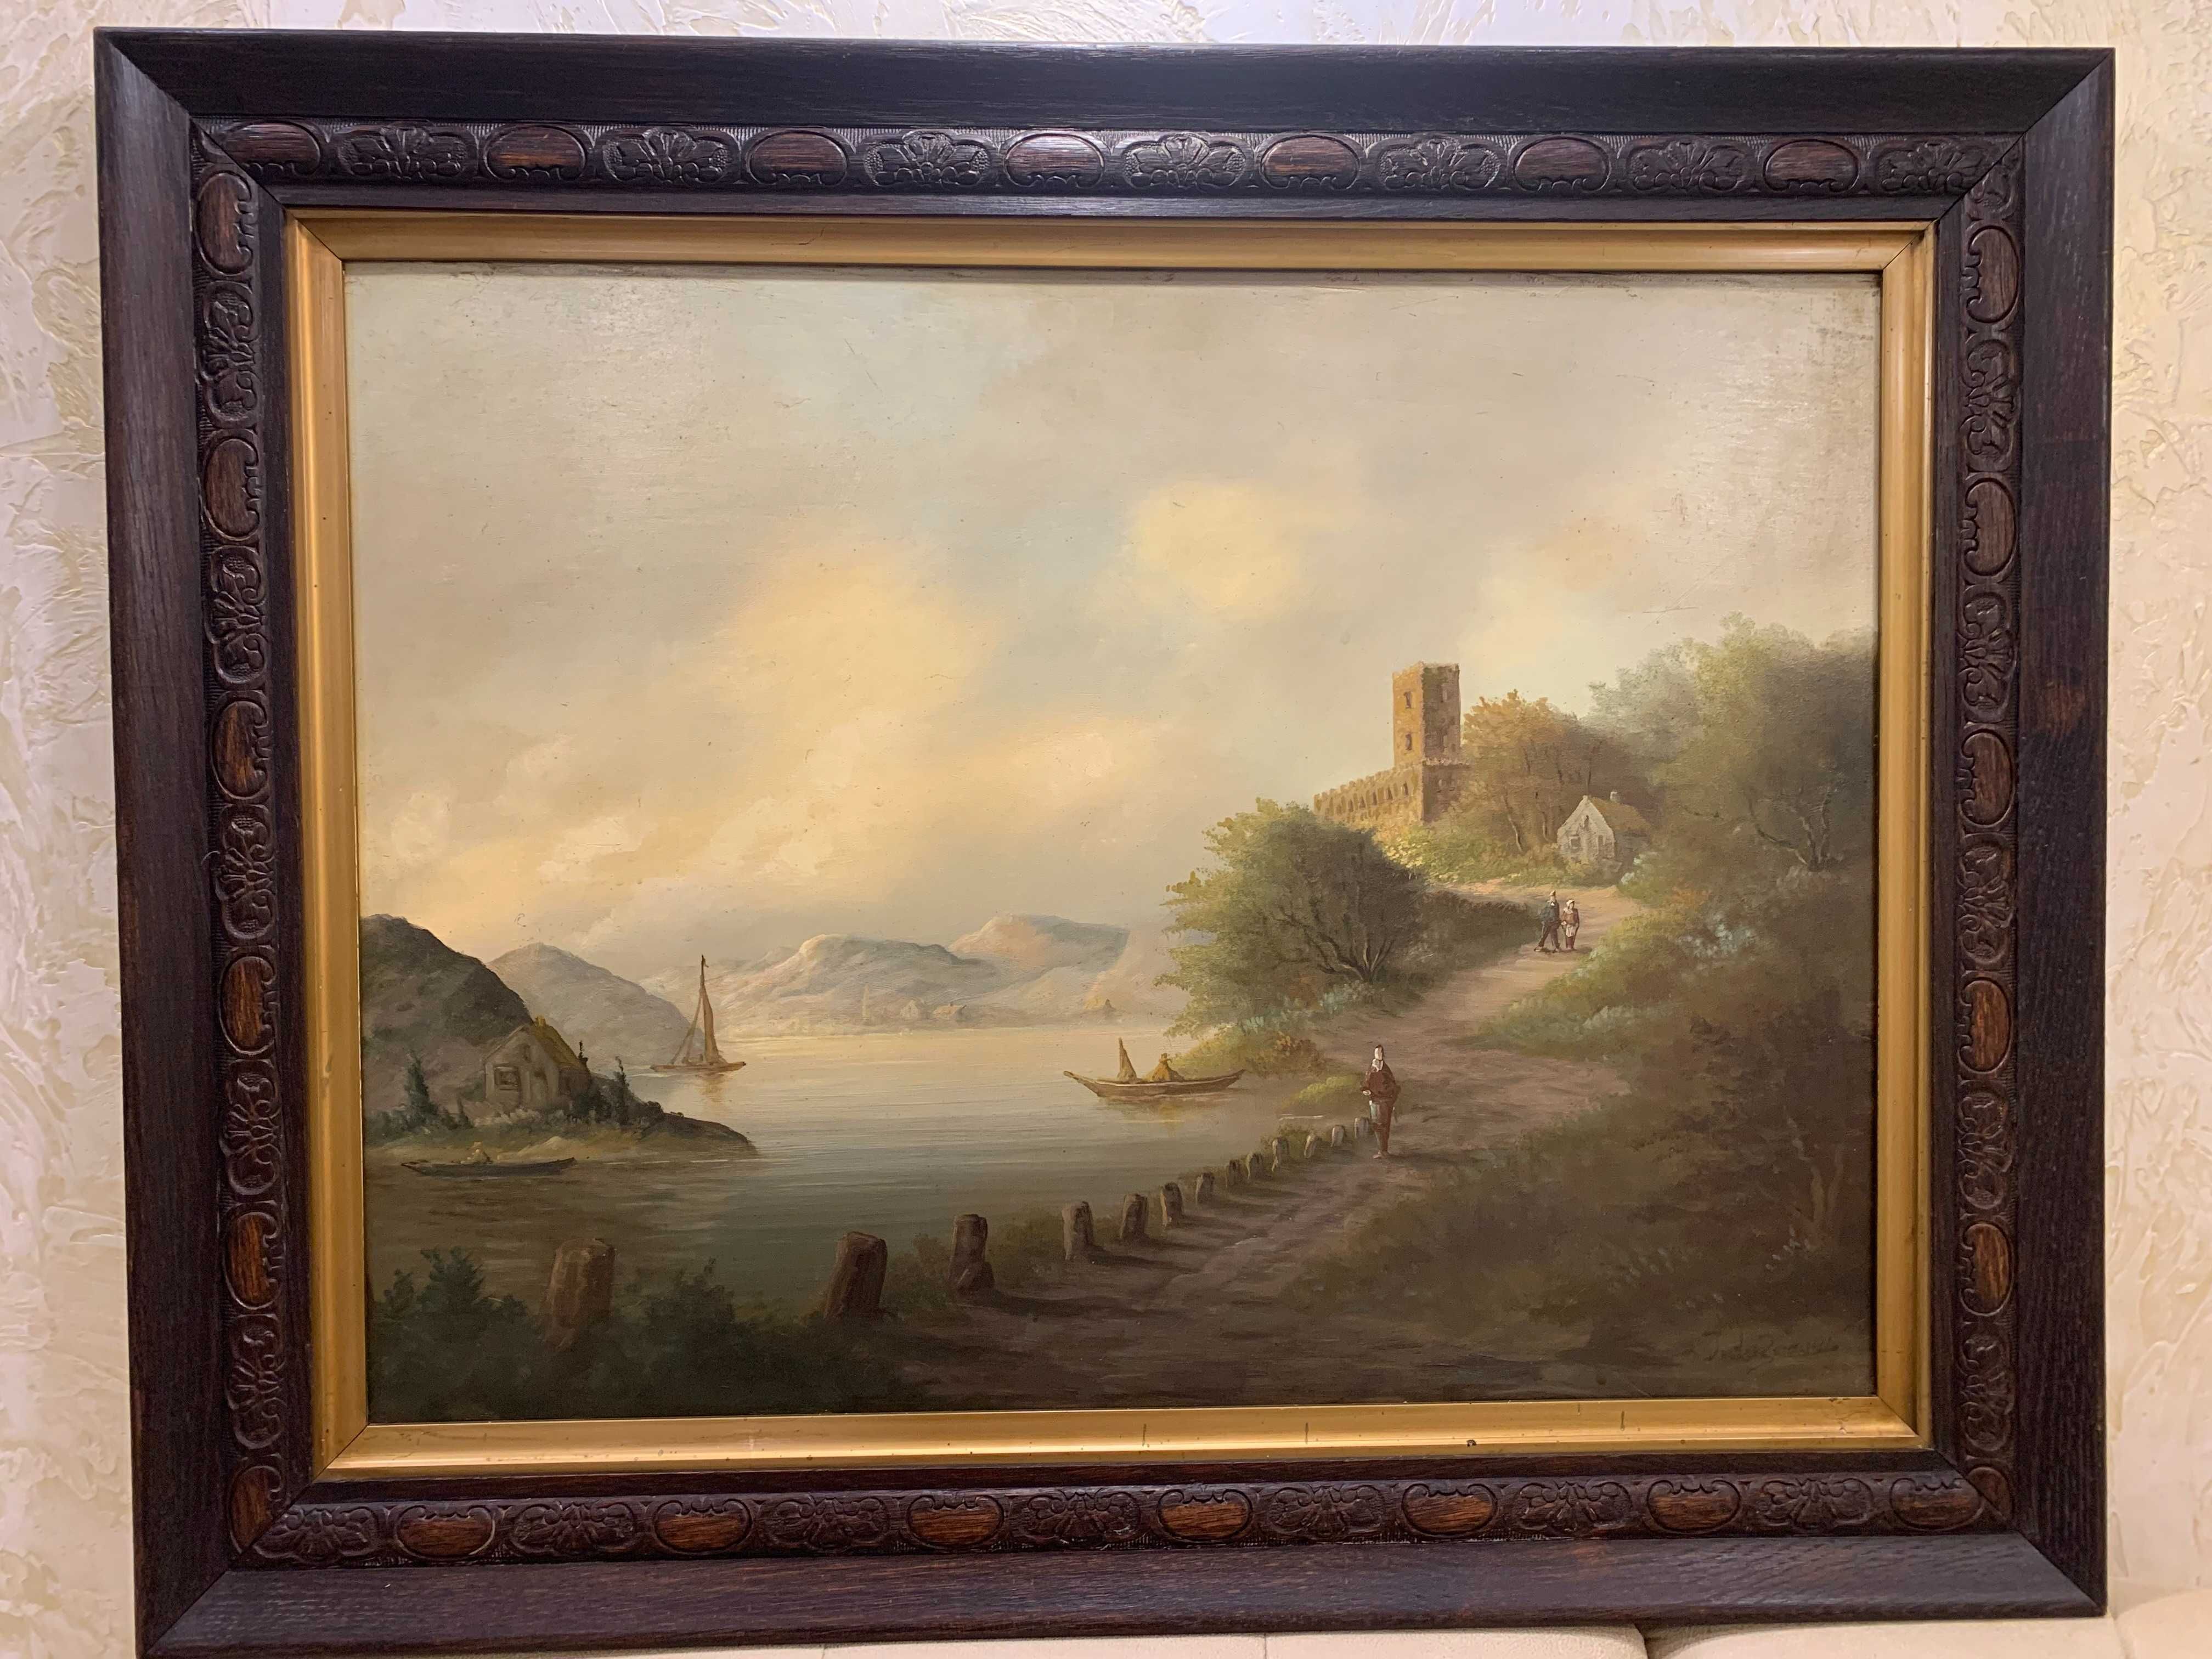 Картина старовинна "Дорога біля берега",олія на дошці.Розм.67*83,5см